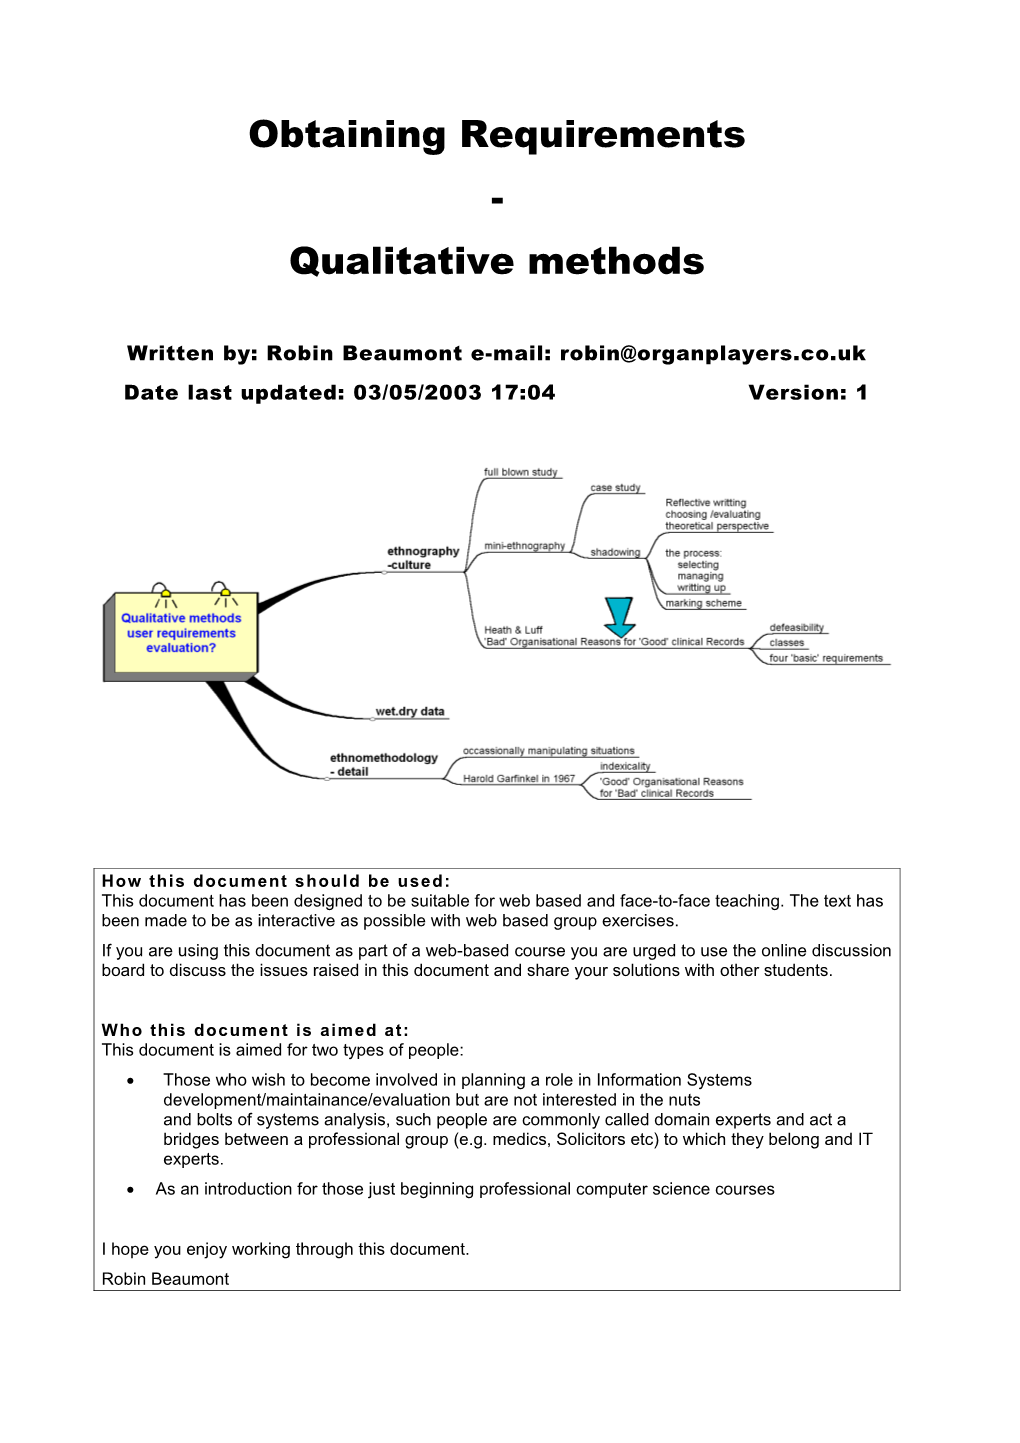 Obtaining Requirements Qualitative Methods